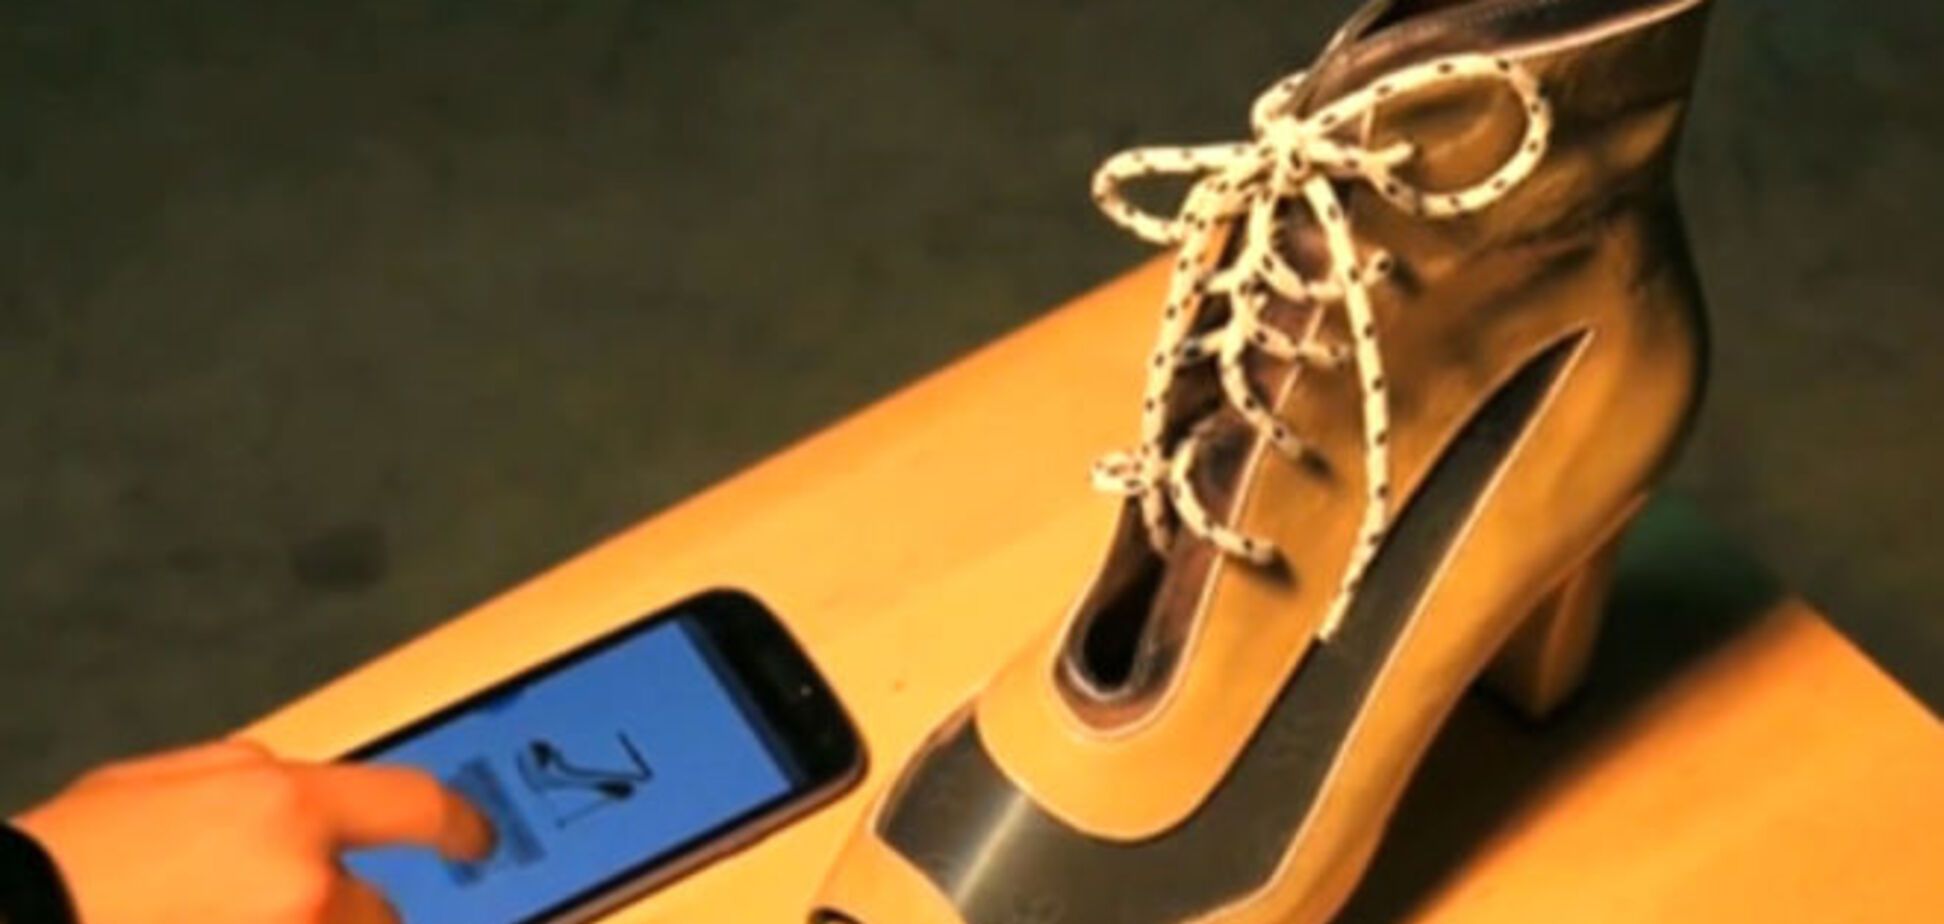 Созданы 'умные' туфли, меняющие узоры под настроение